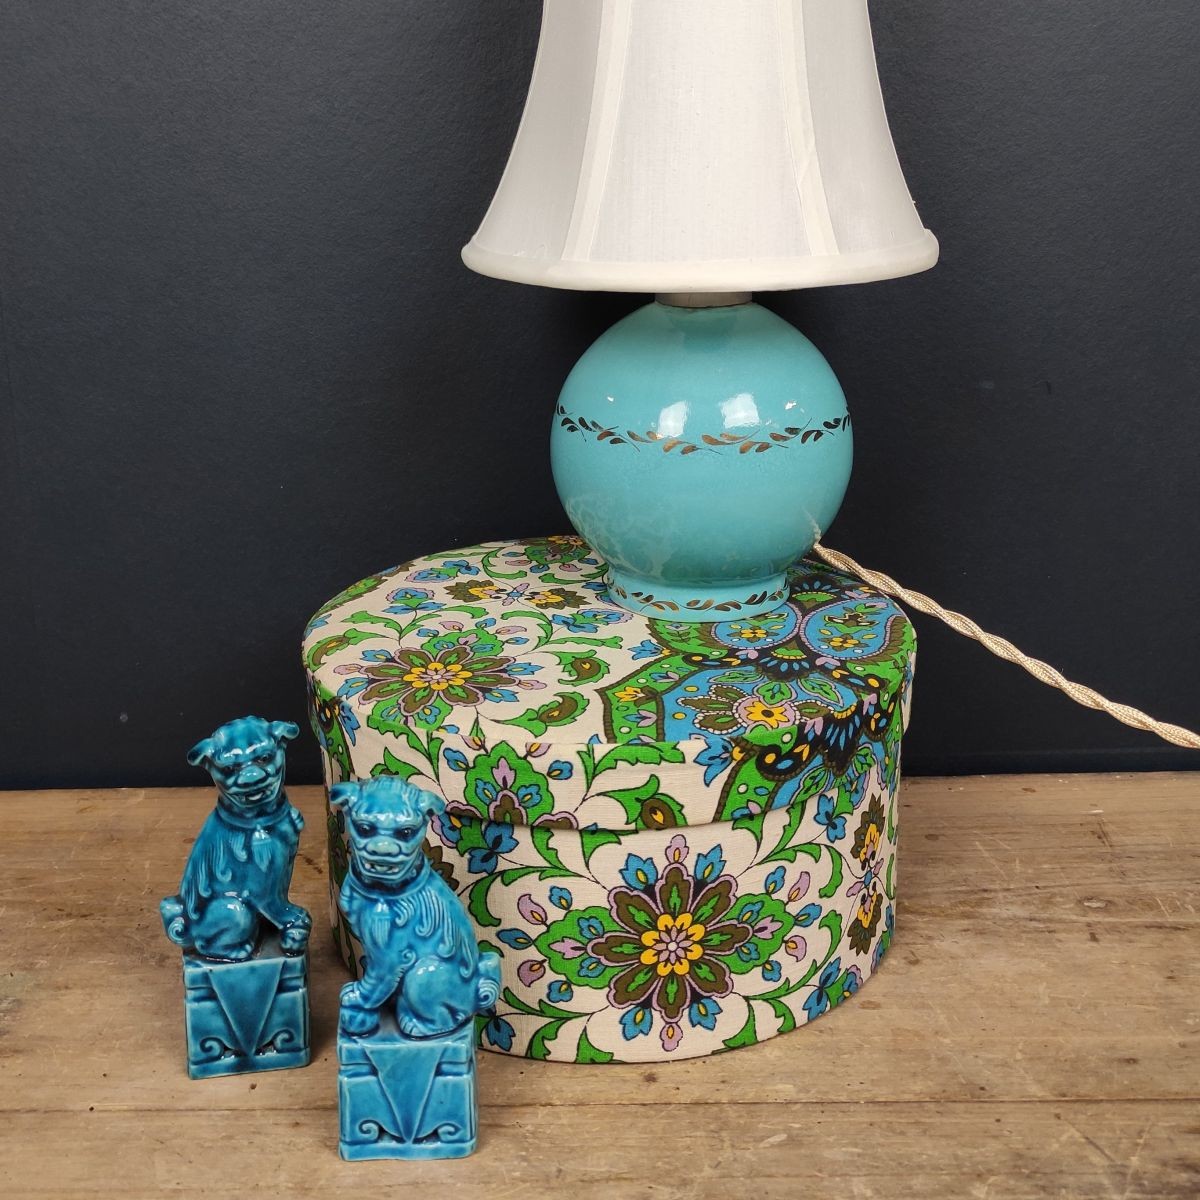 Petite lampe en céramique turquoise & dorée - Le palais des bricoles